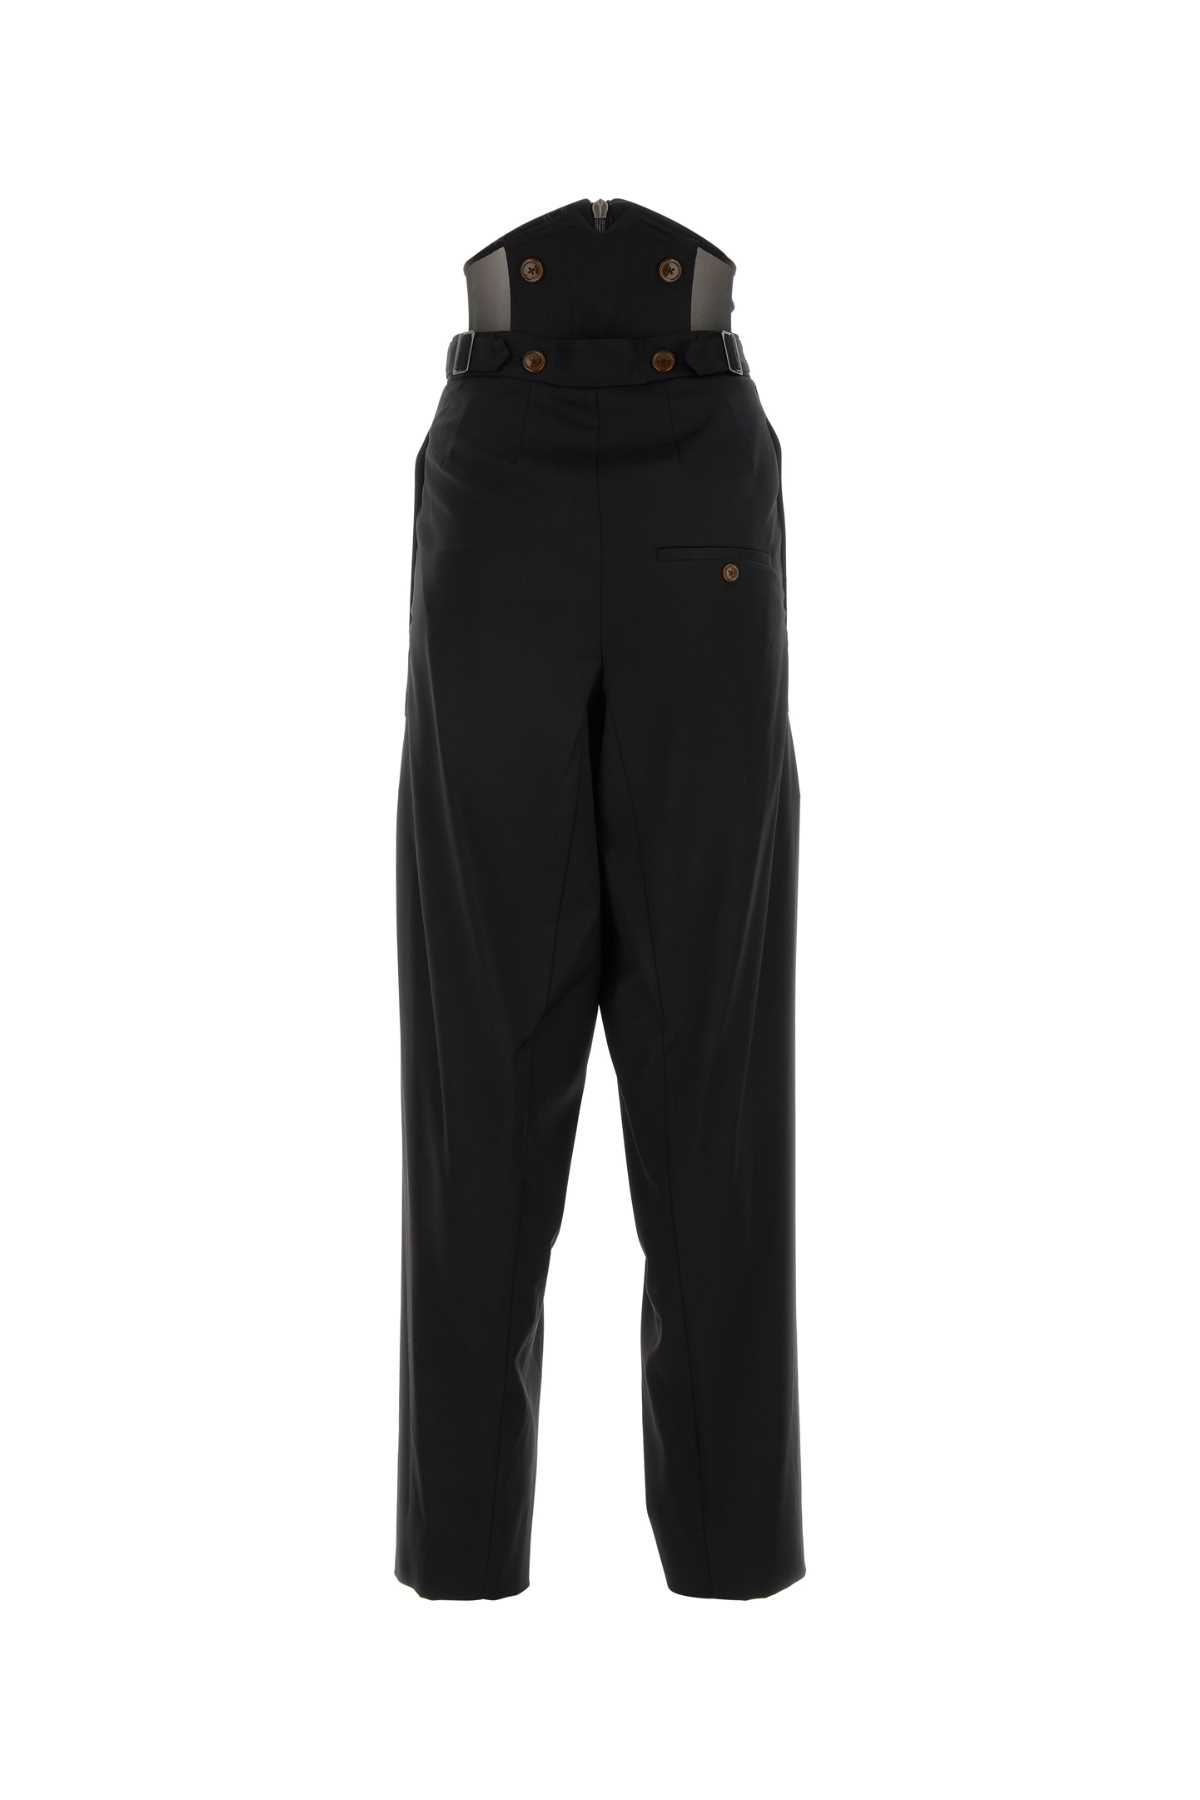 Vivienne Westwood Black Wool Trouser